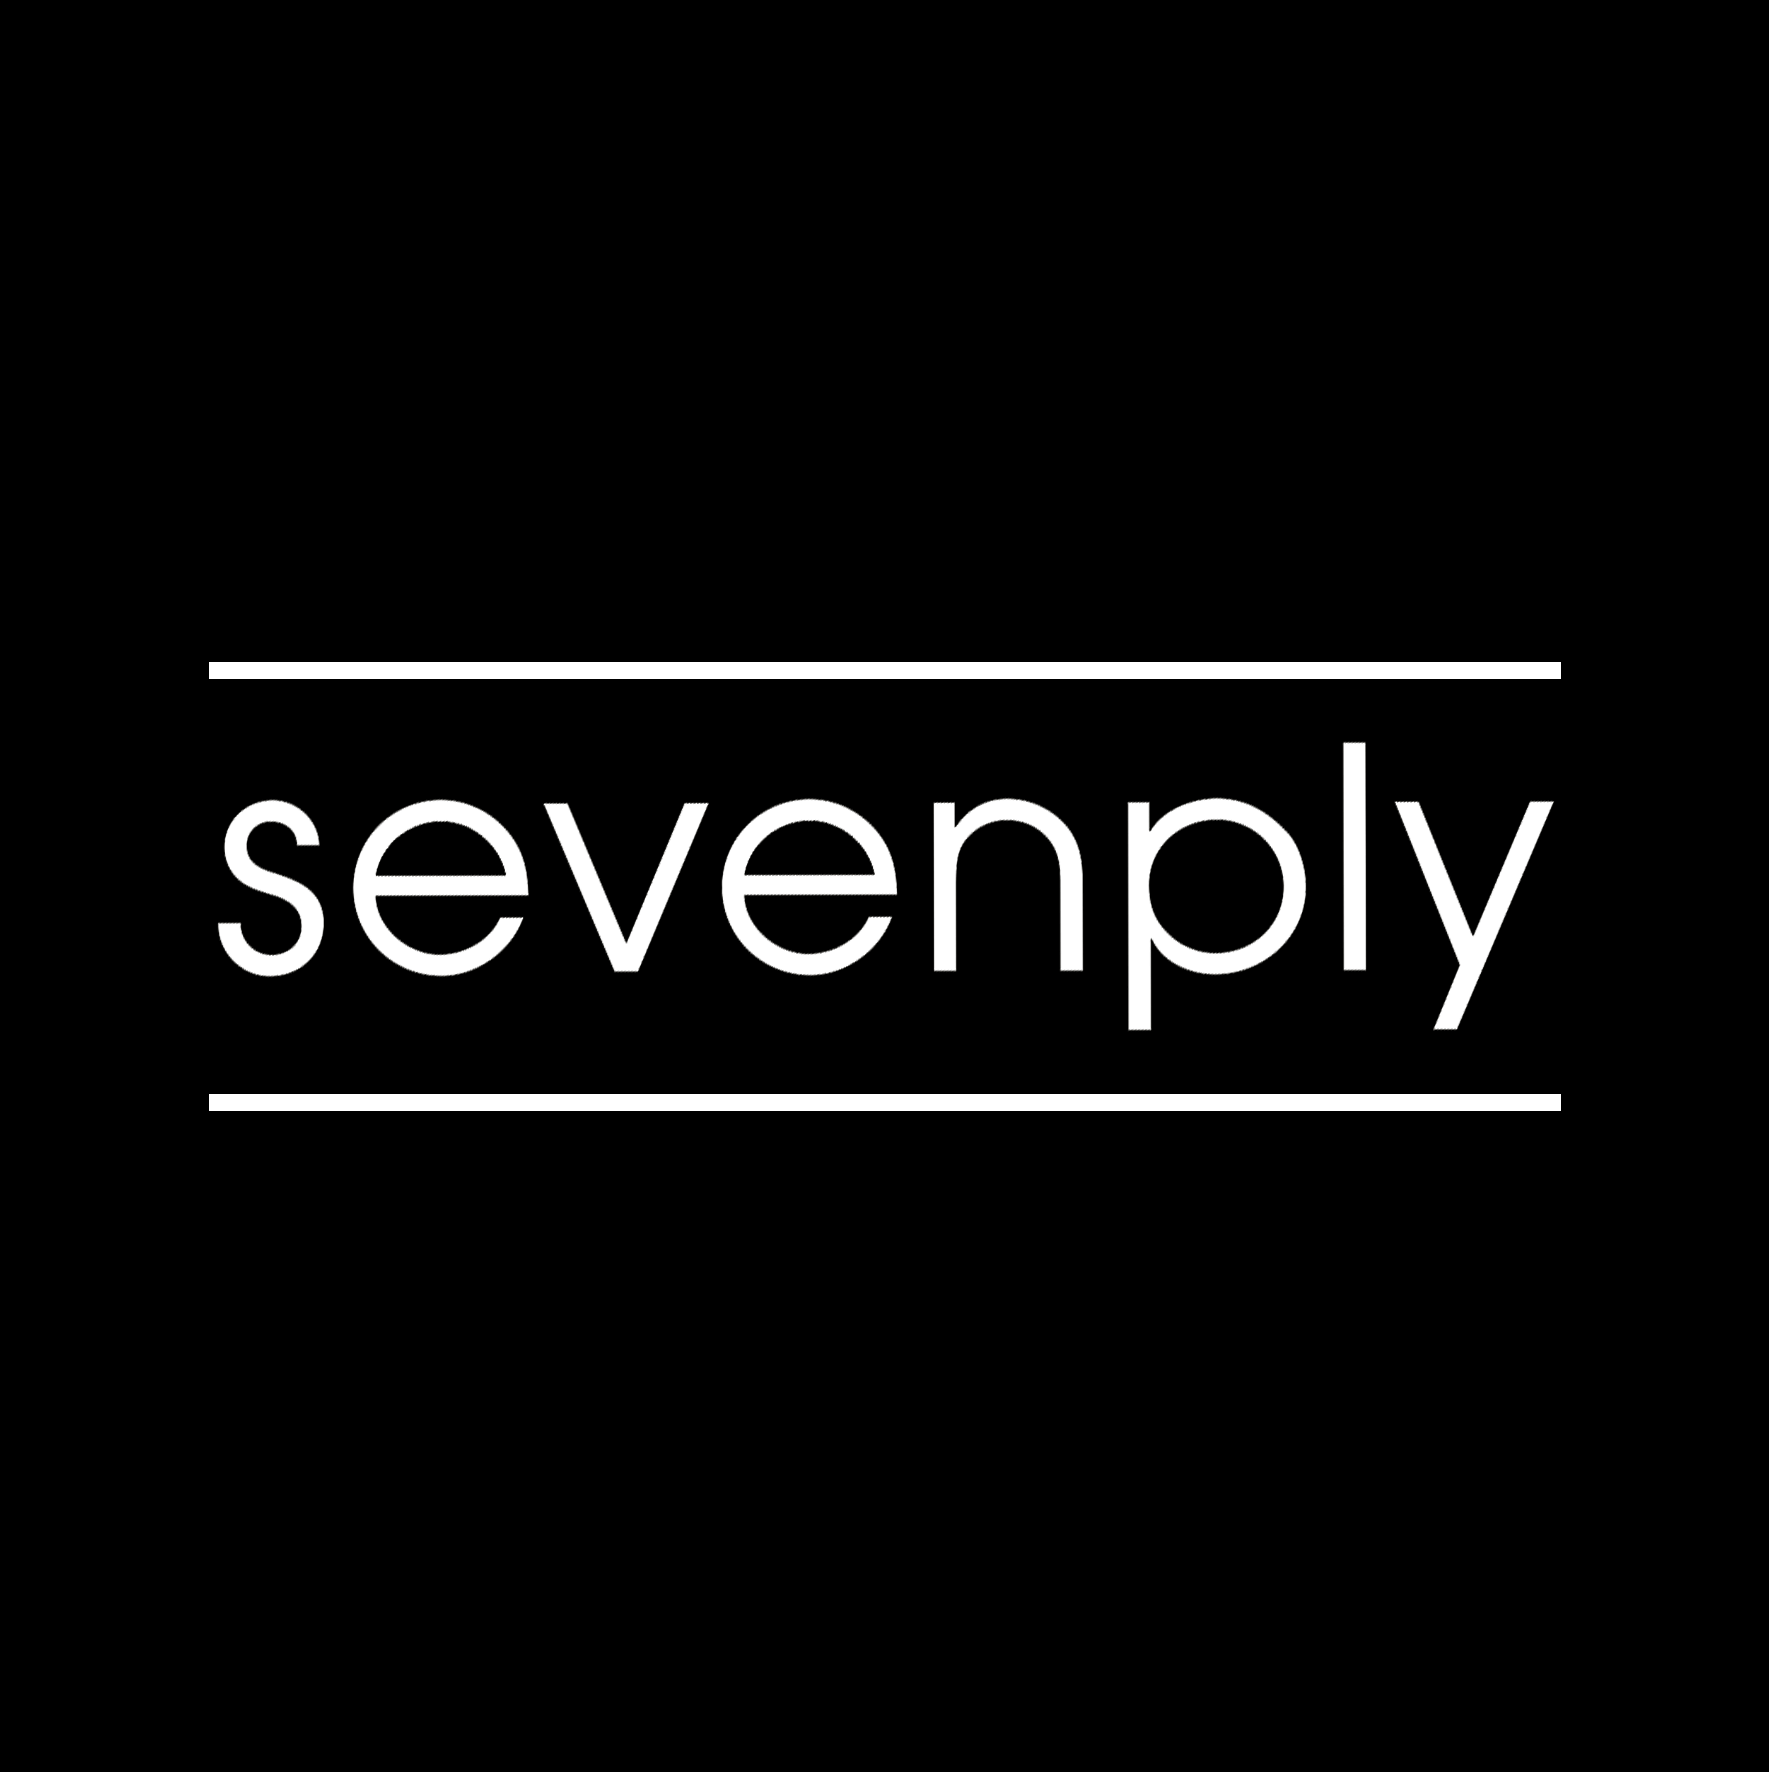 Sevenply